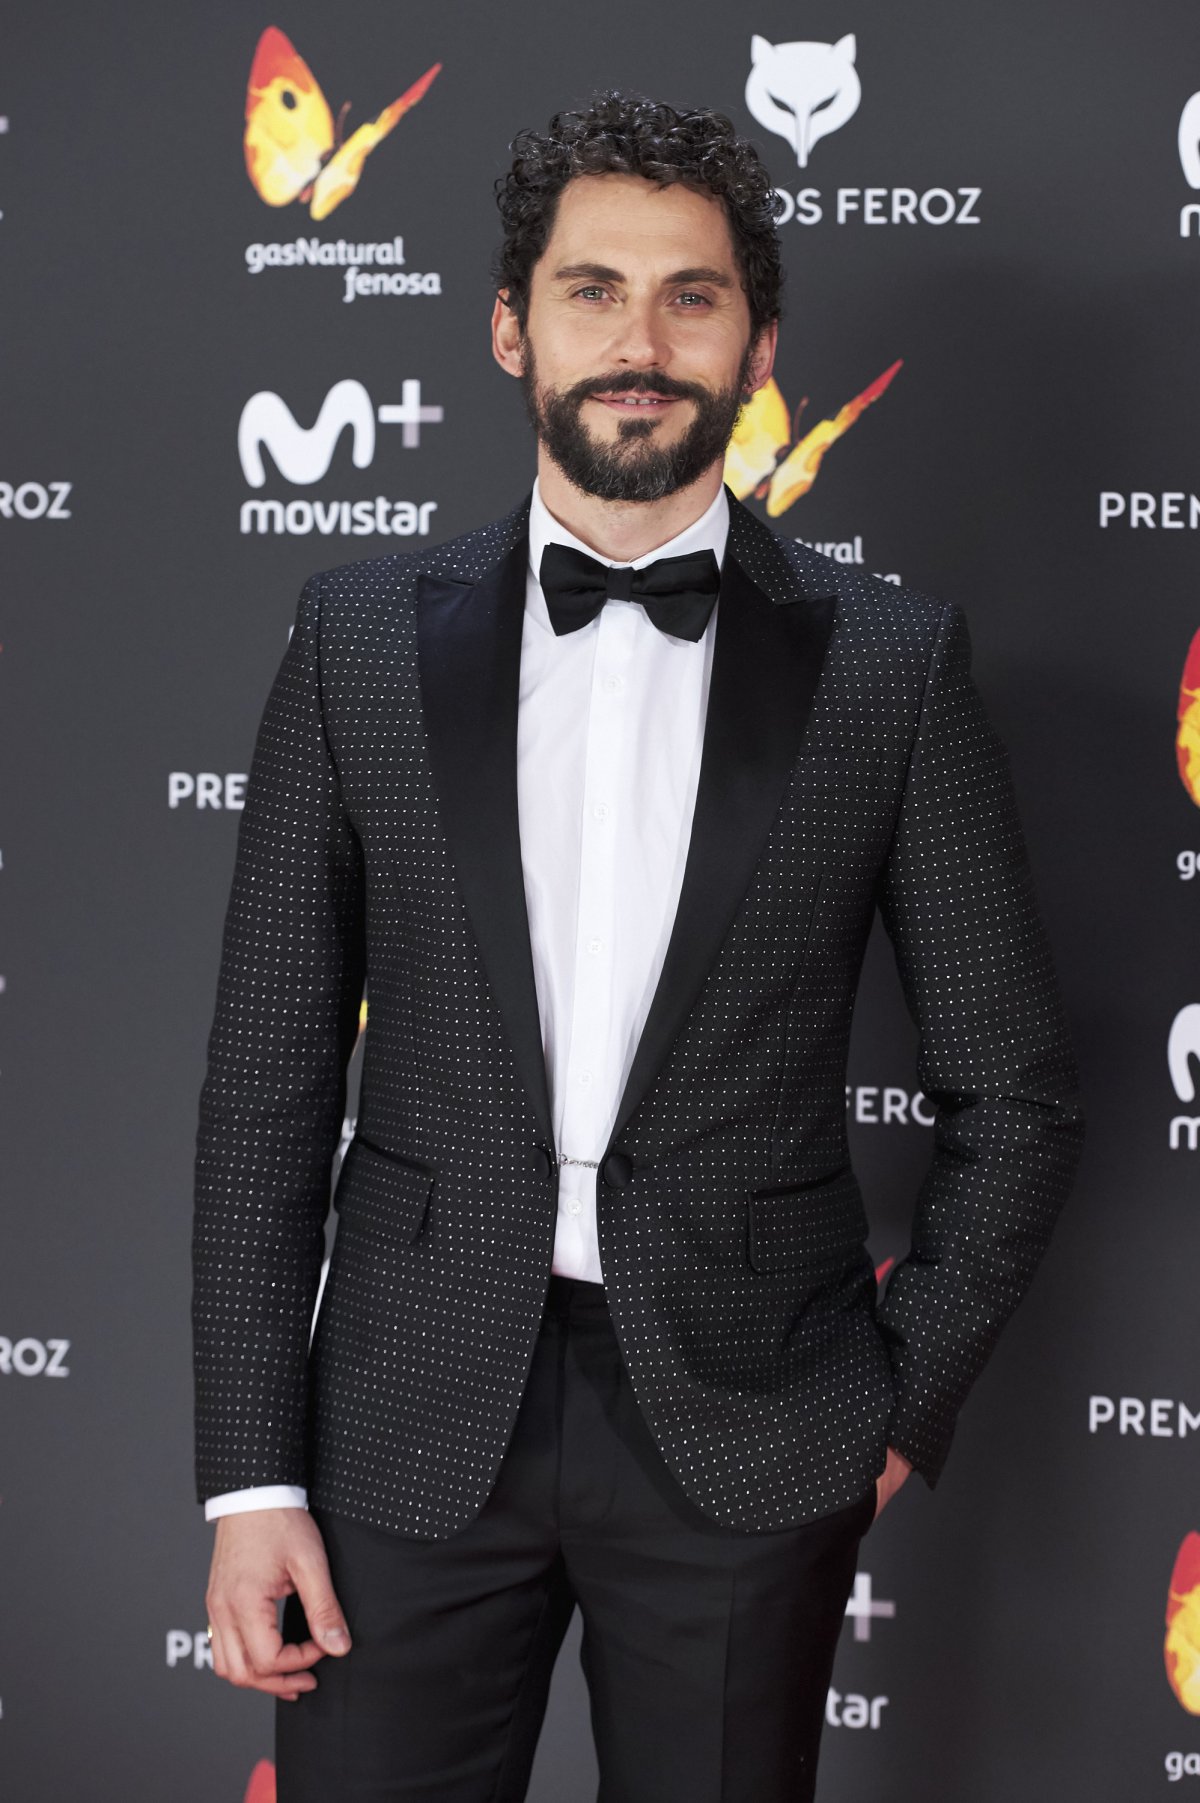 Nadie se quiso perder la alfombra roja de los premios más gamberros del cine español